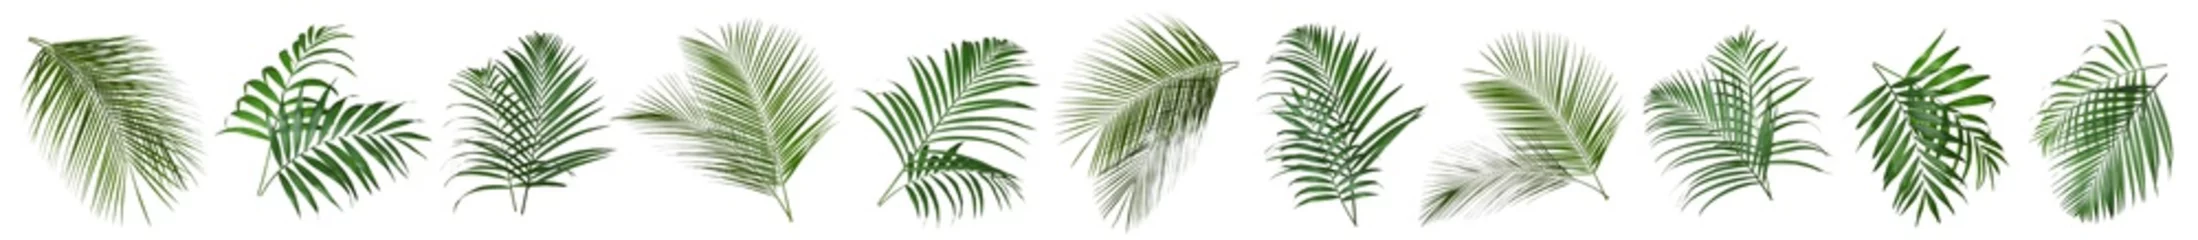 Fototapeten Satz tropische Blätter auf weißem Hintergrund. Banner-Design © New Africa